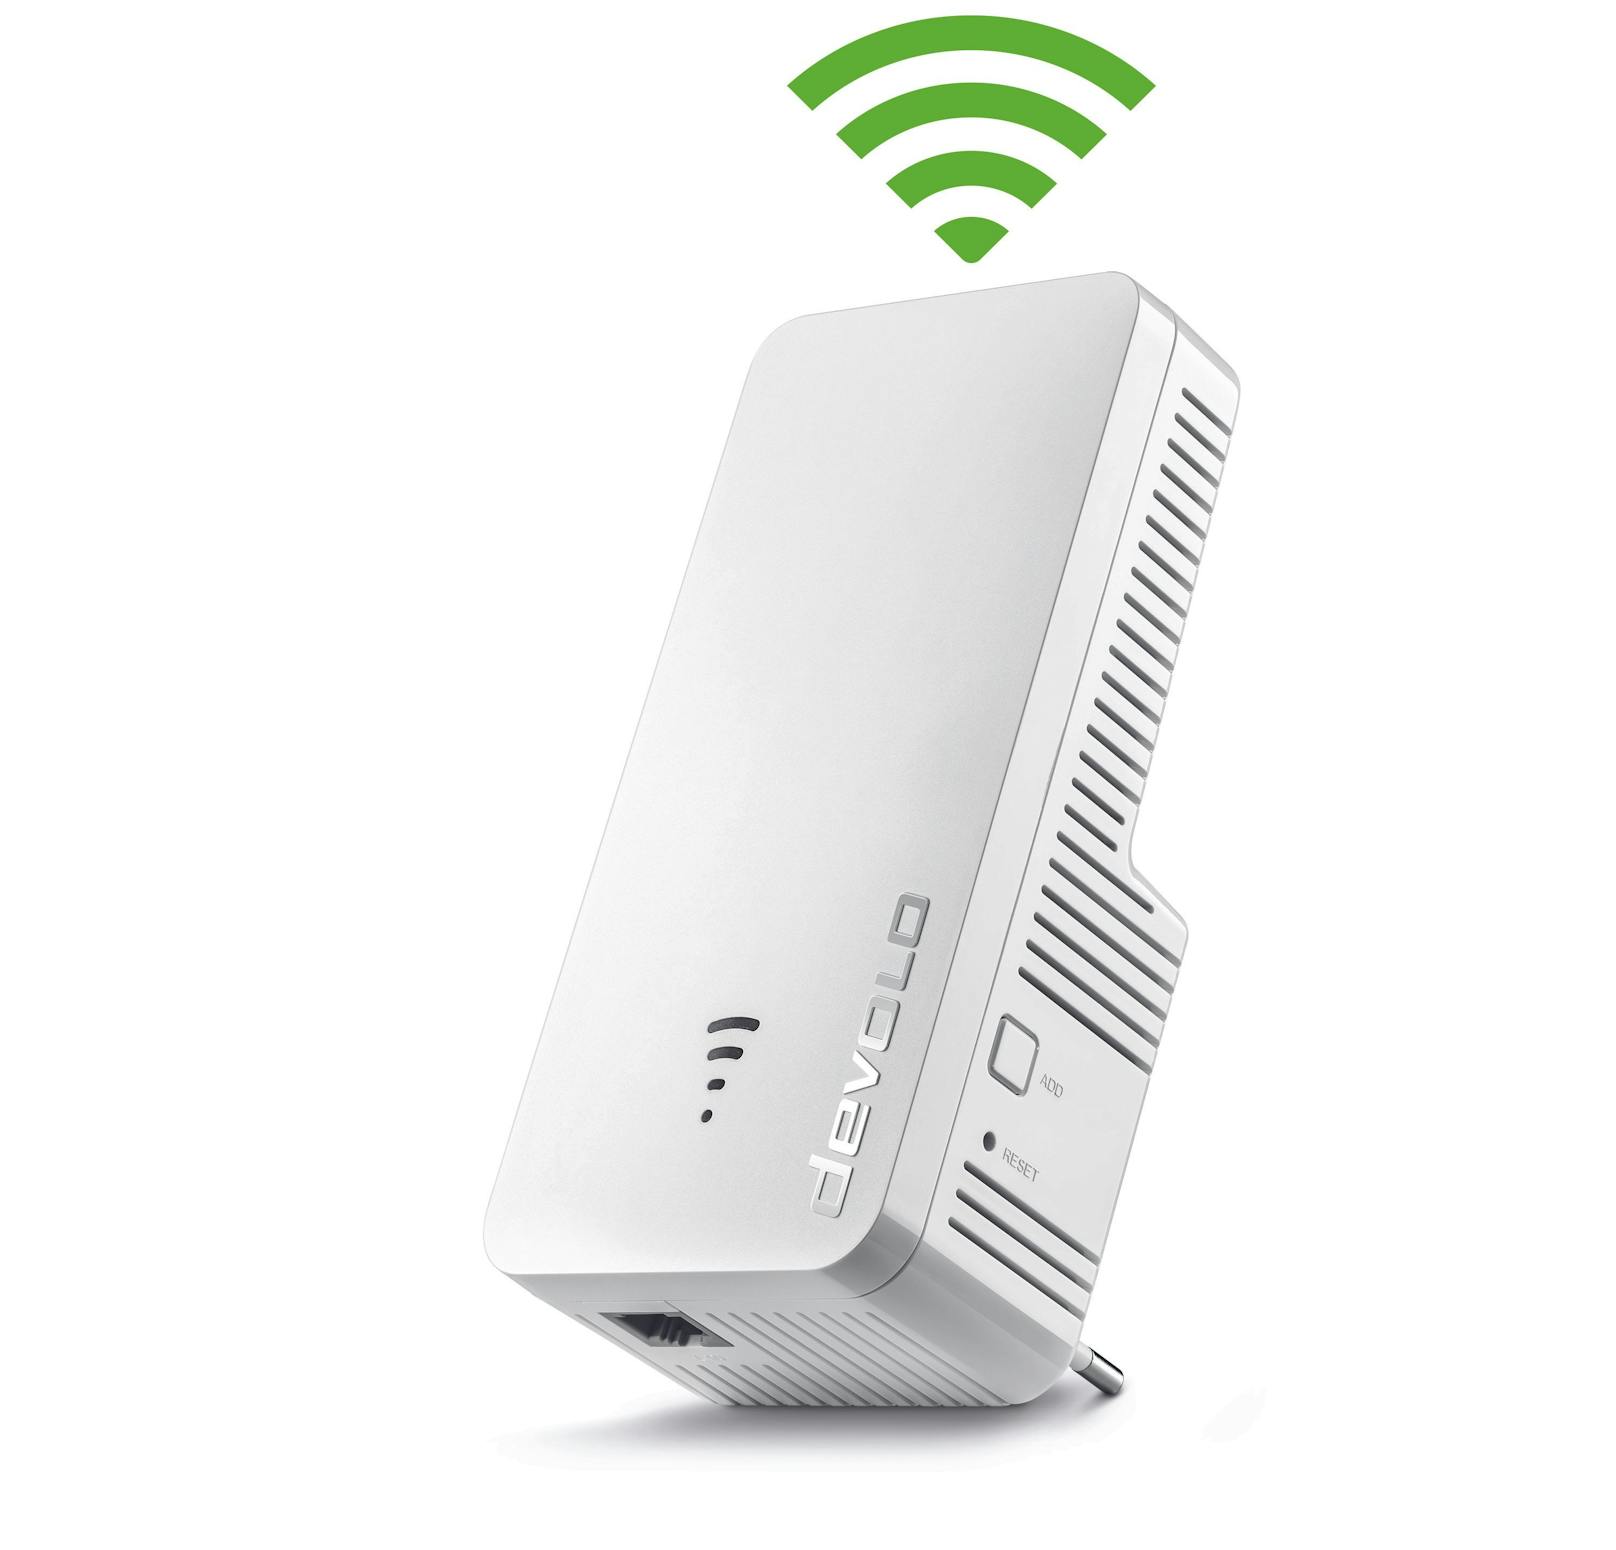 Nutzer, die ihr WLAN-Netzwerk zuhause erweitern wollen, bekommen nun die Signalstärke direkt am Repeater angezeigt.